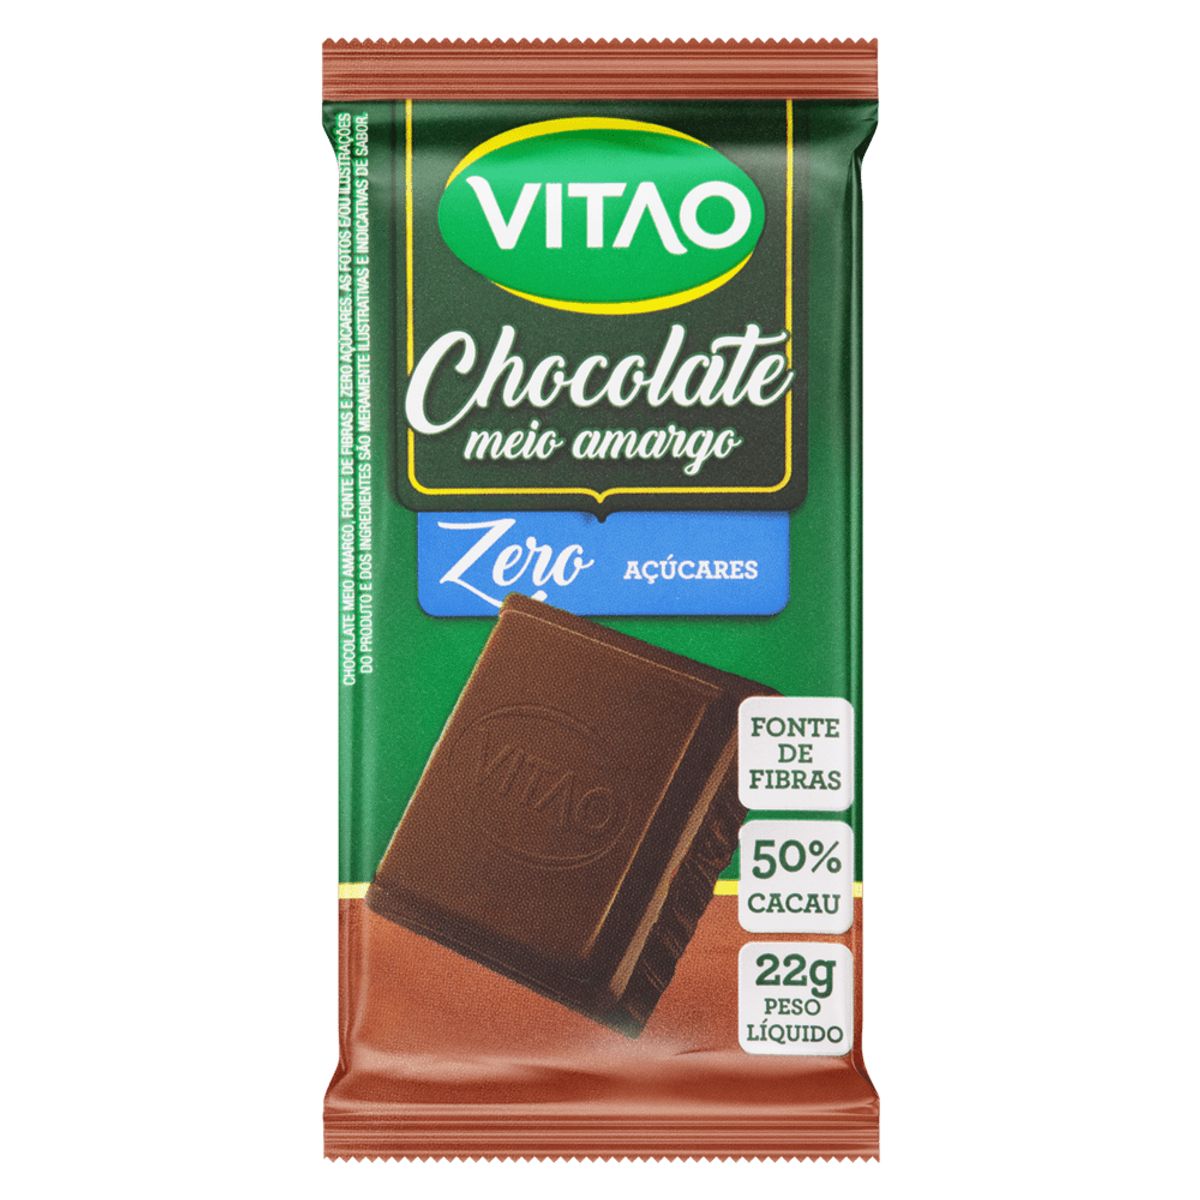 Chocolate Meio Amargo Vitao 50% Cacau Zero Açúcar 22g